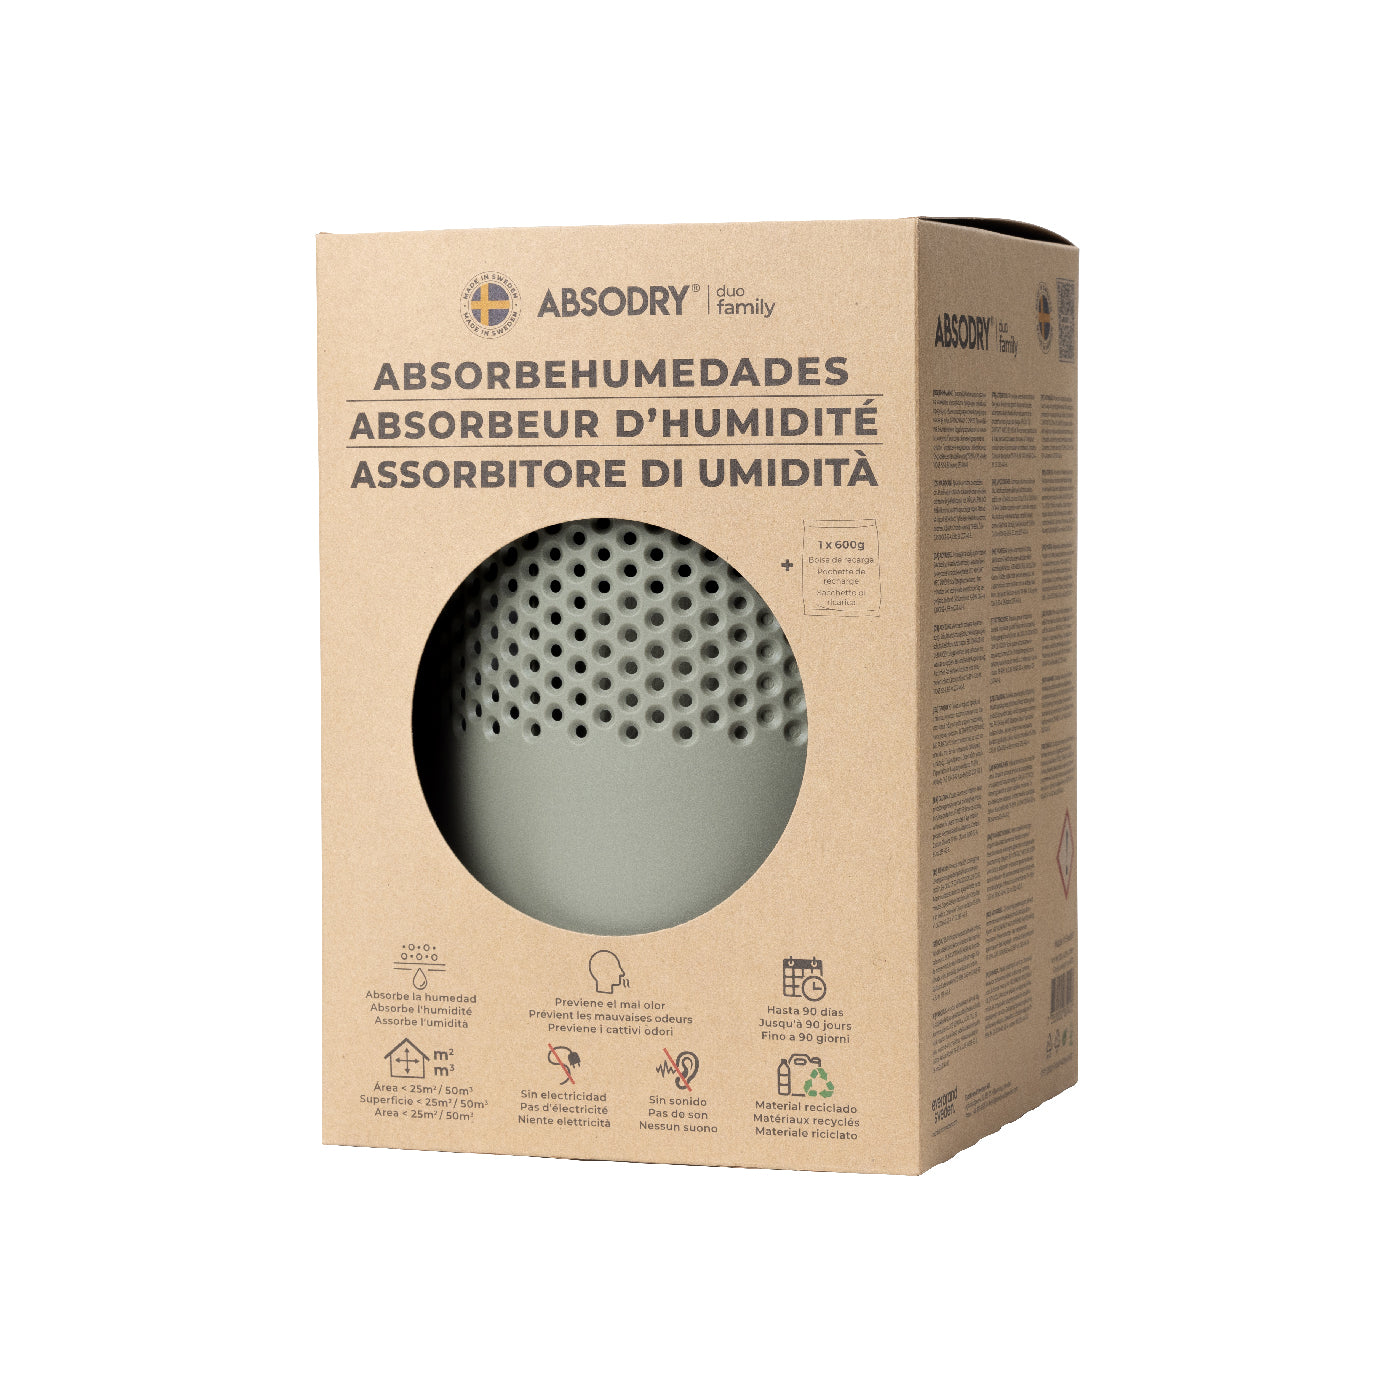 北歐熱賣 | Absodry Duo 家居吸濕劑 瑞典製造